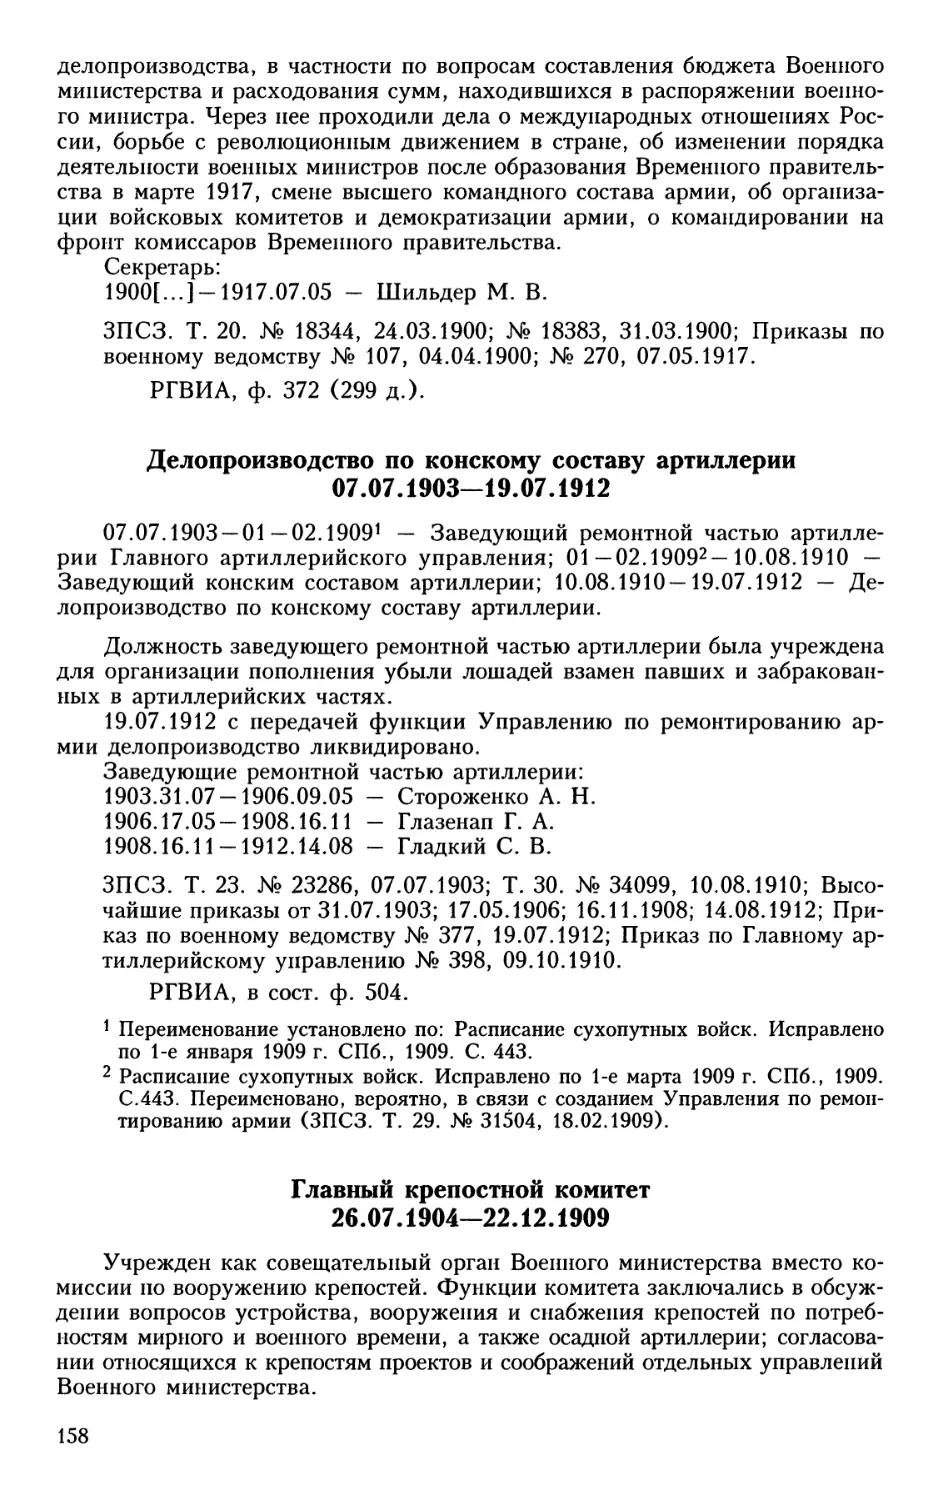 Делопроизводство по конскому составу артиллерии
Главный крепостной комитет